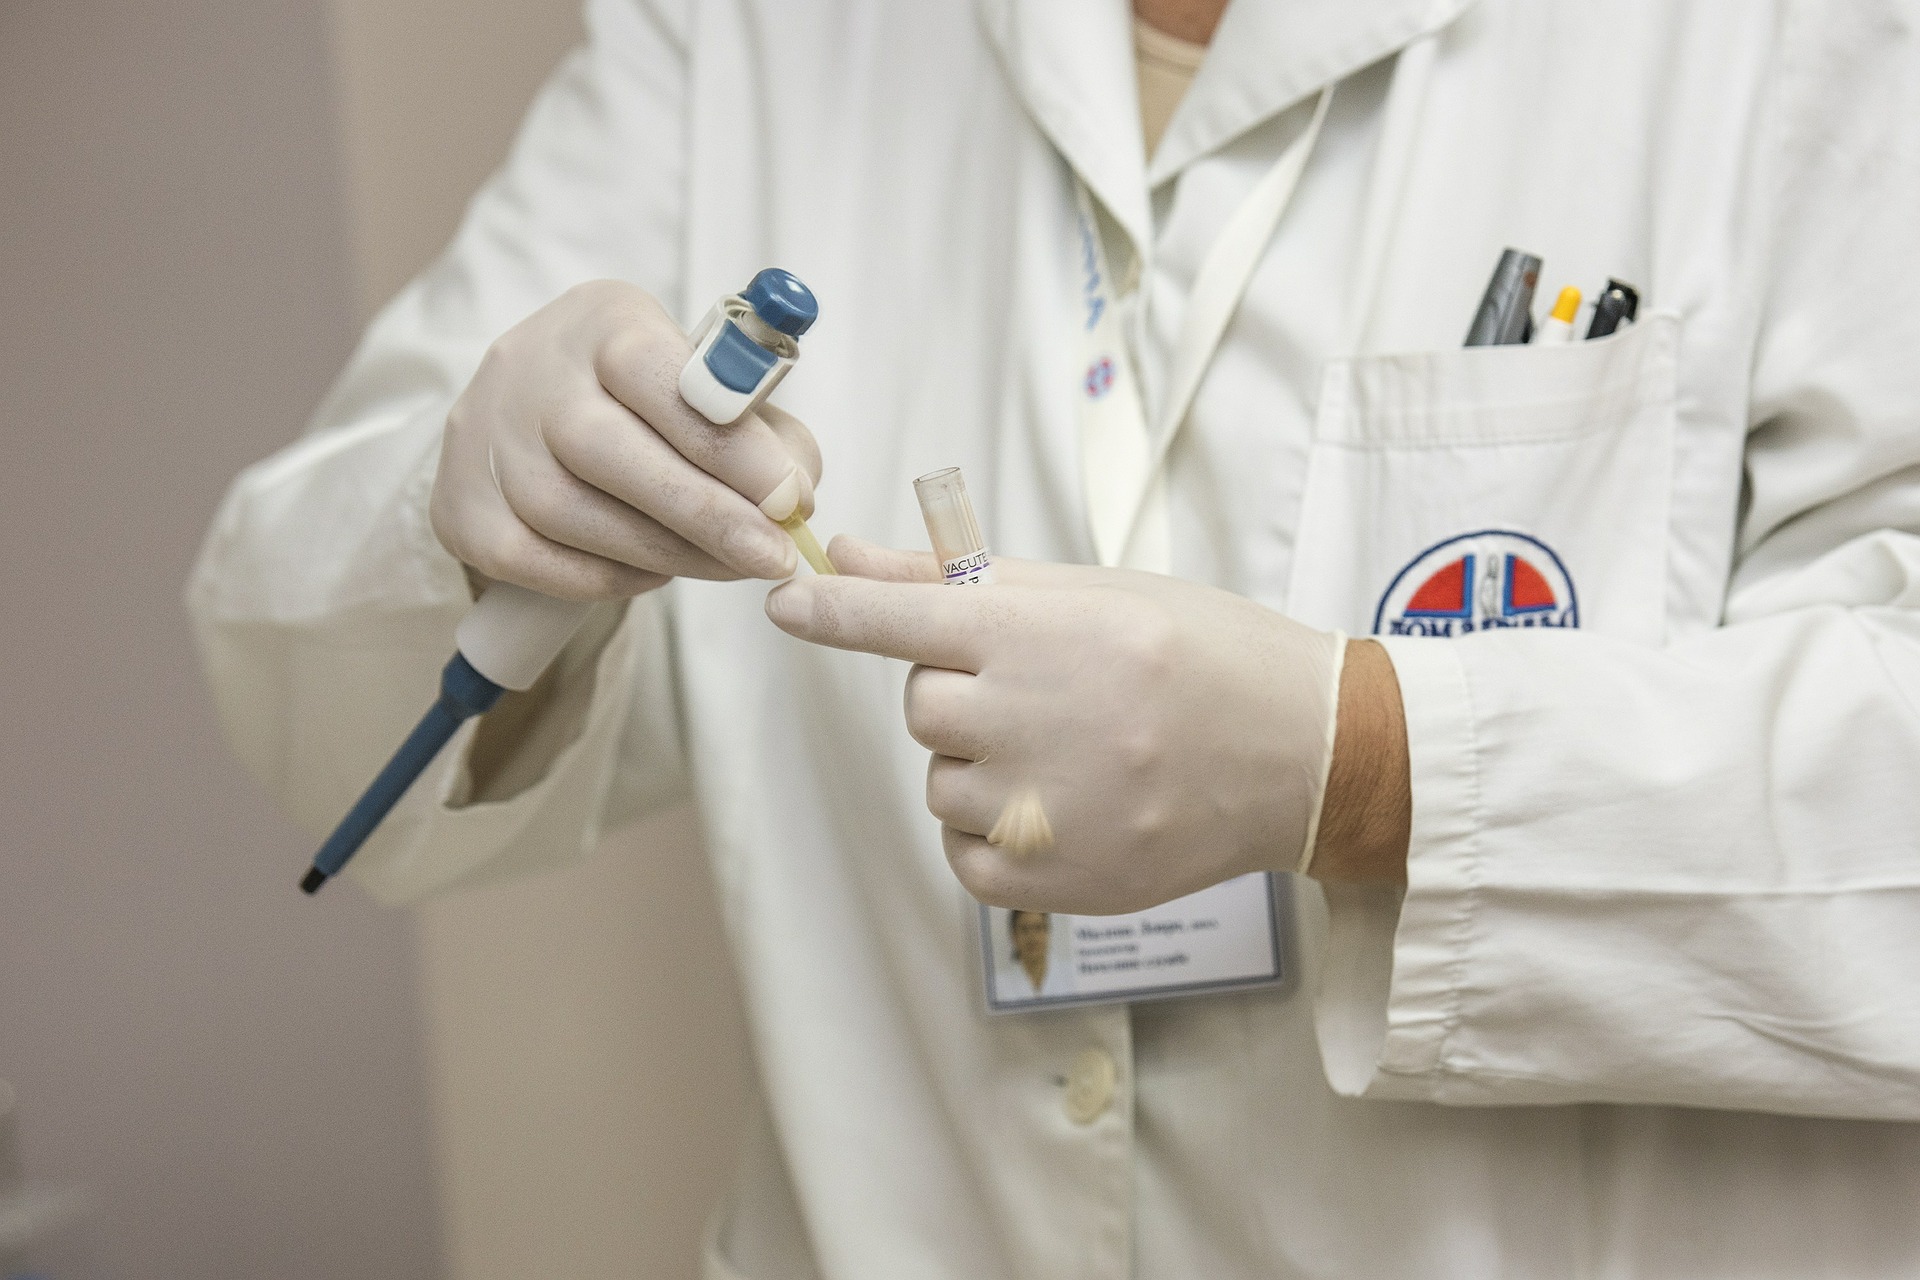 Aggiornamento Coronavirus in Toscana: 144 nuovi positivi, 1 decesso, 77 guarigioni